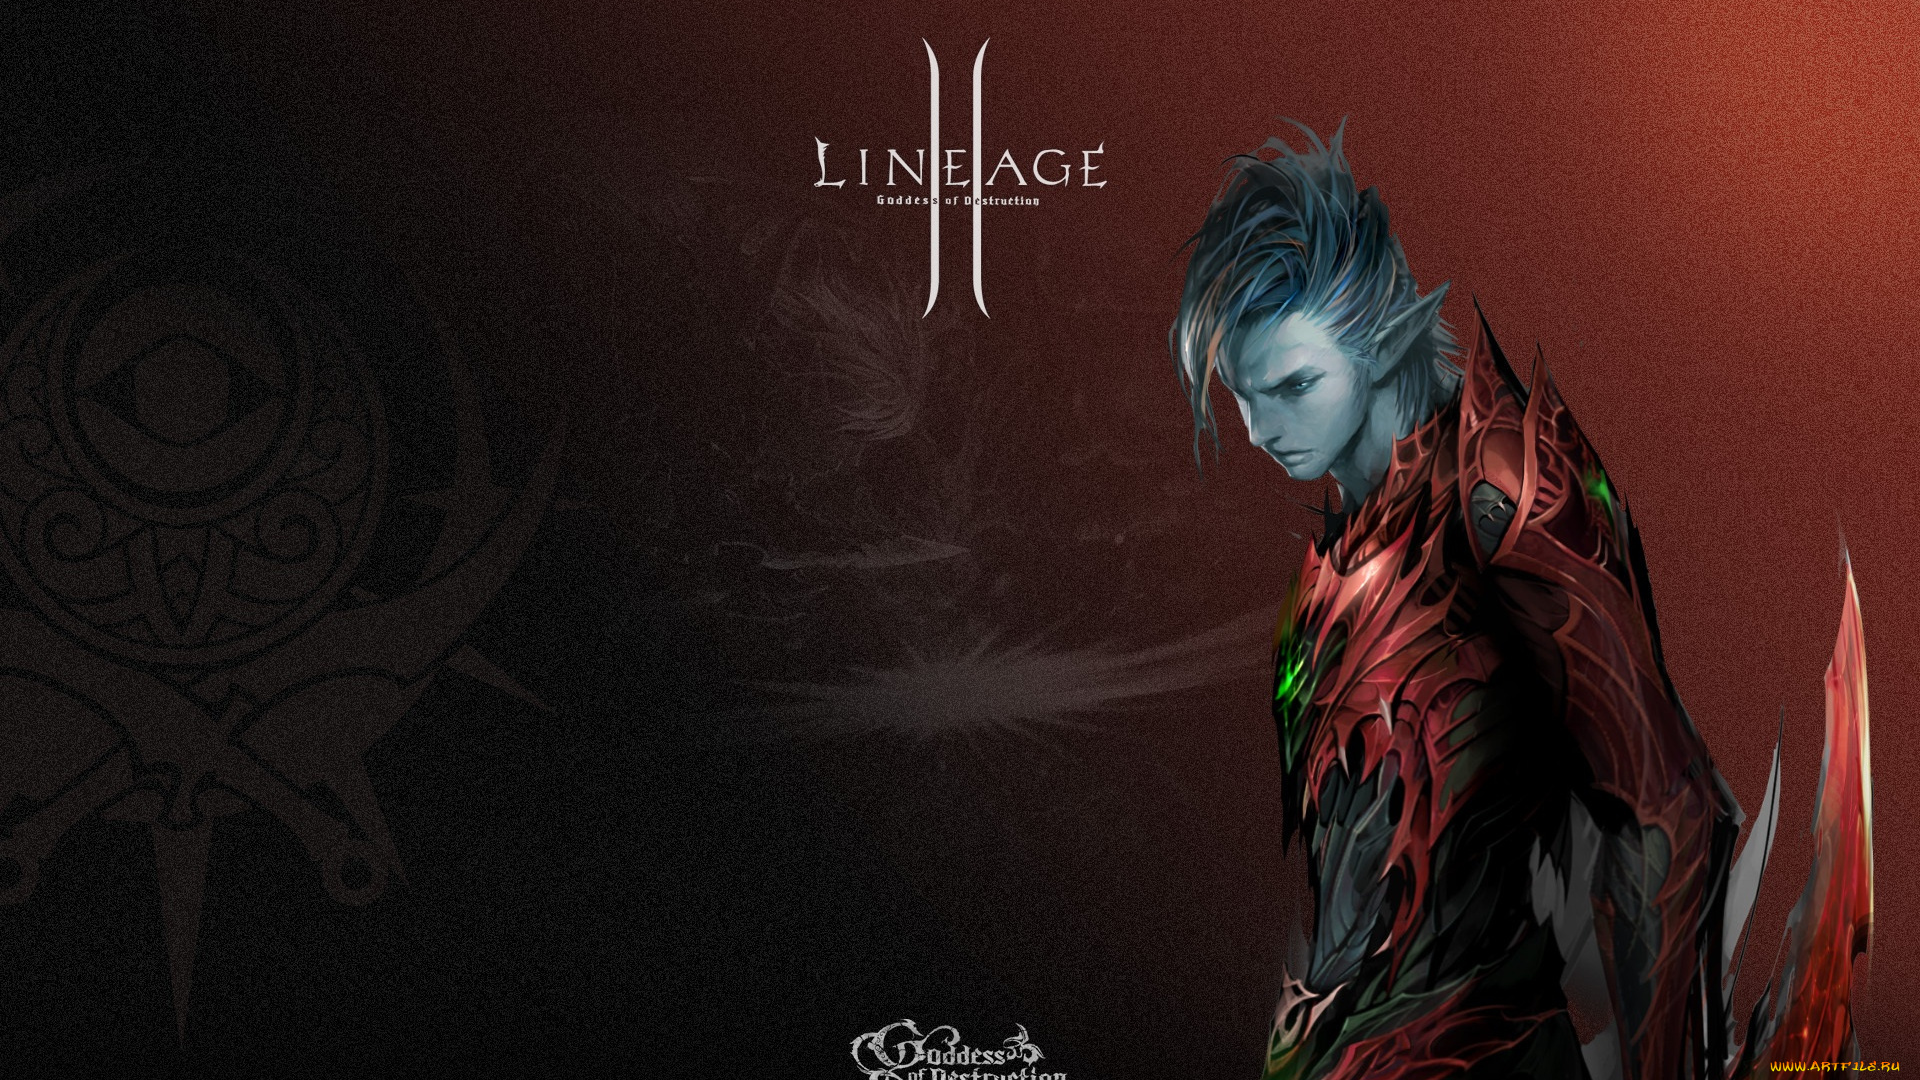 leneage2, видео, игры, lineage, ii, goddess, of, destruction, эльф, ркасный